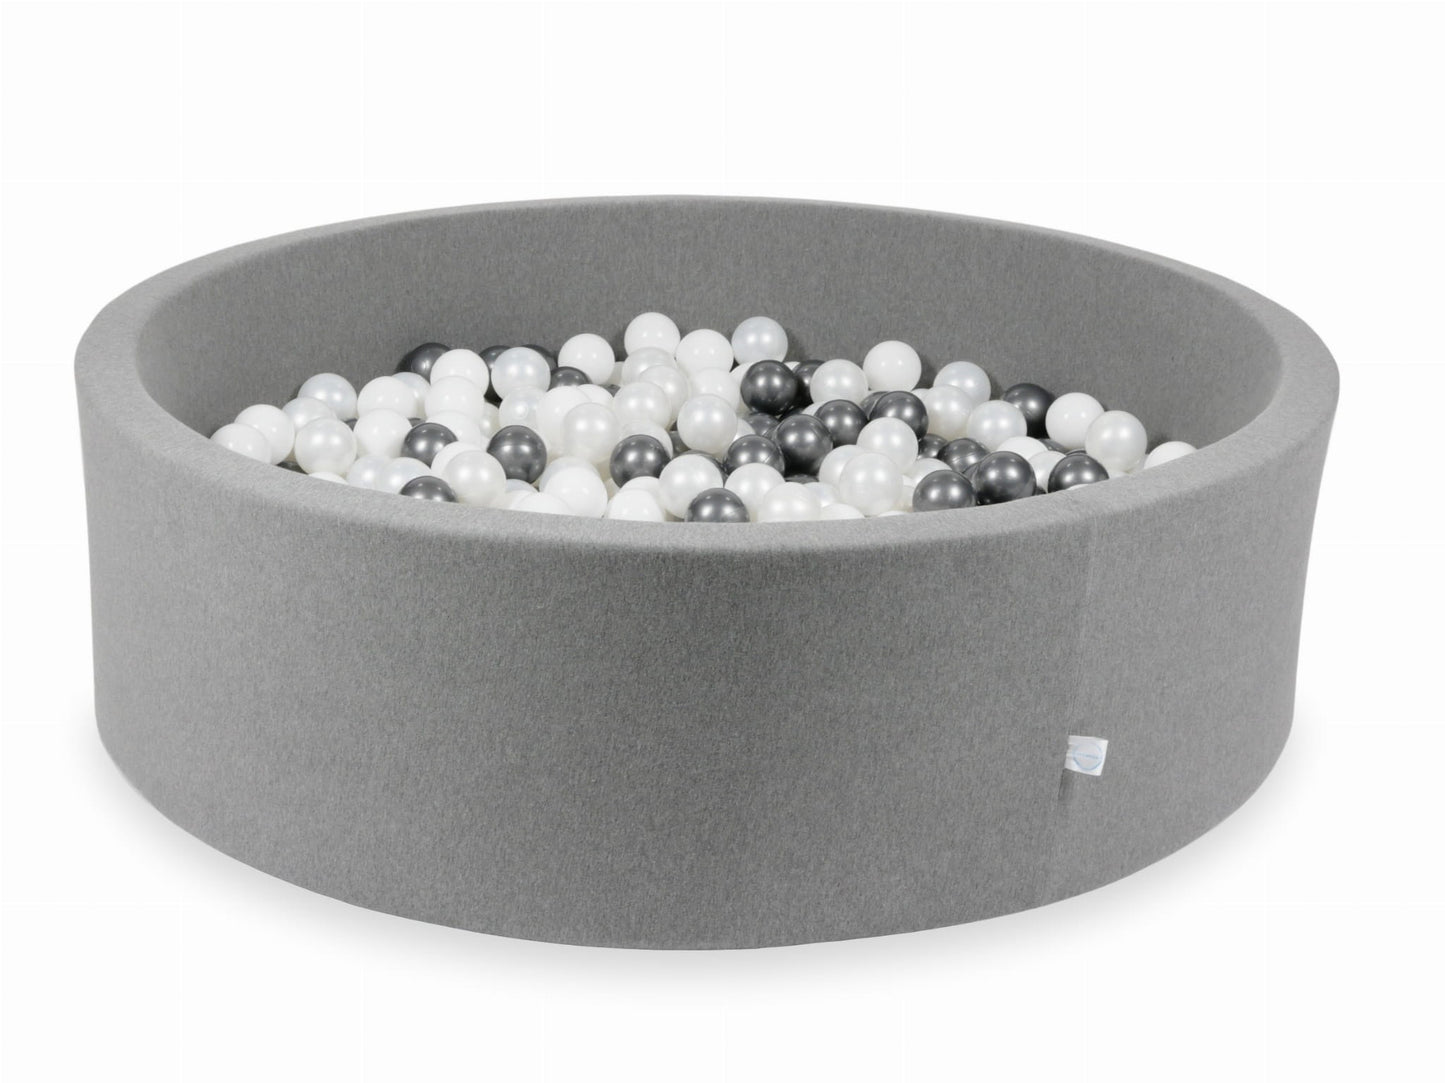 Piscine à Balles 130x40 grise avec balles 700 pcs (blanc, perle, graphite métallique)